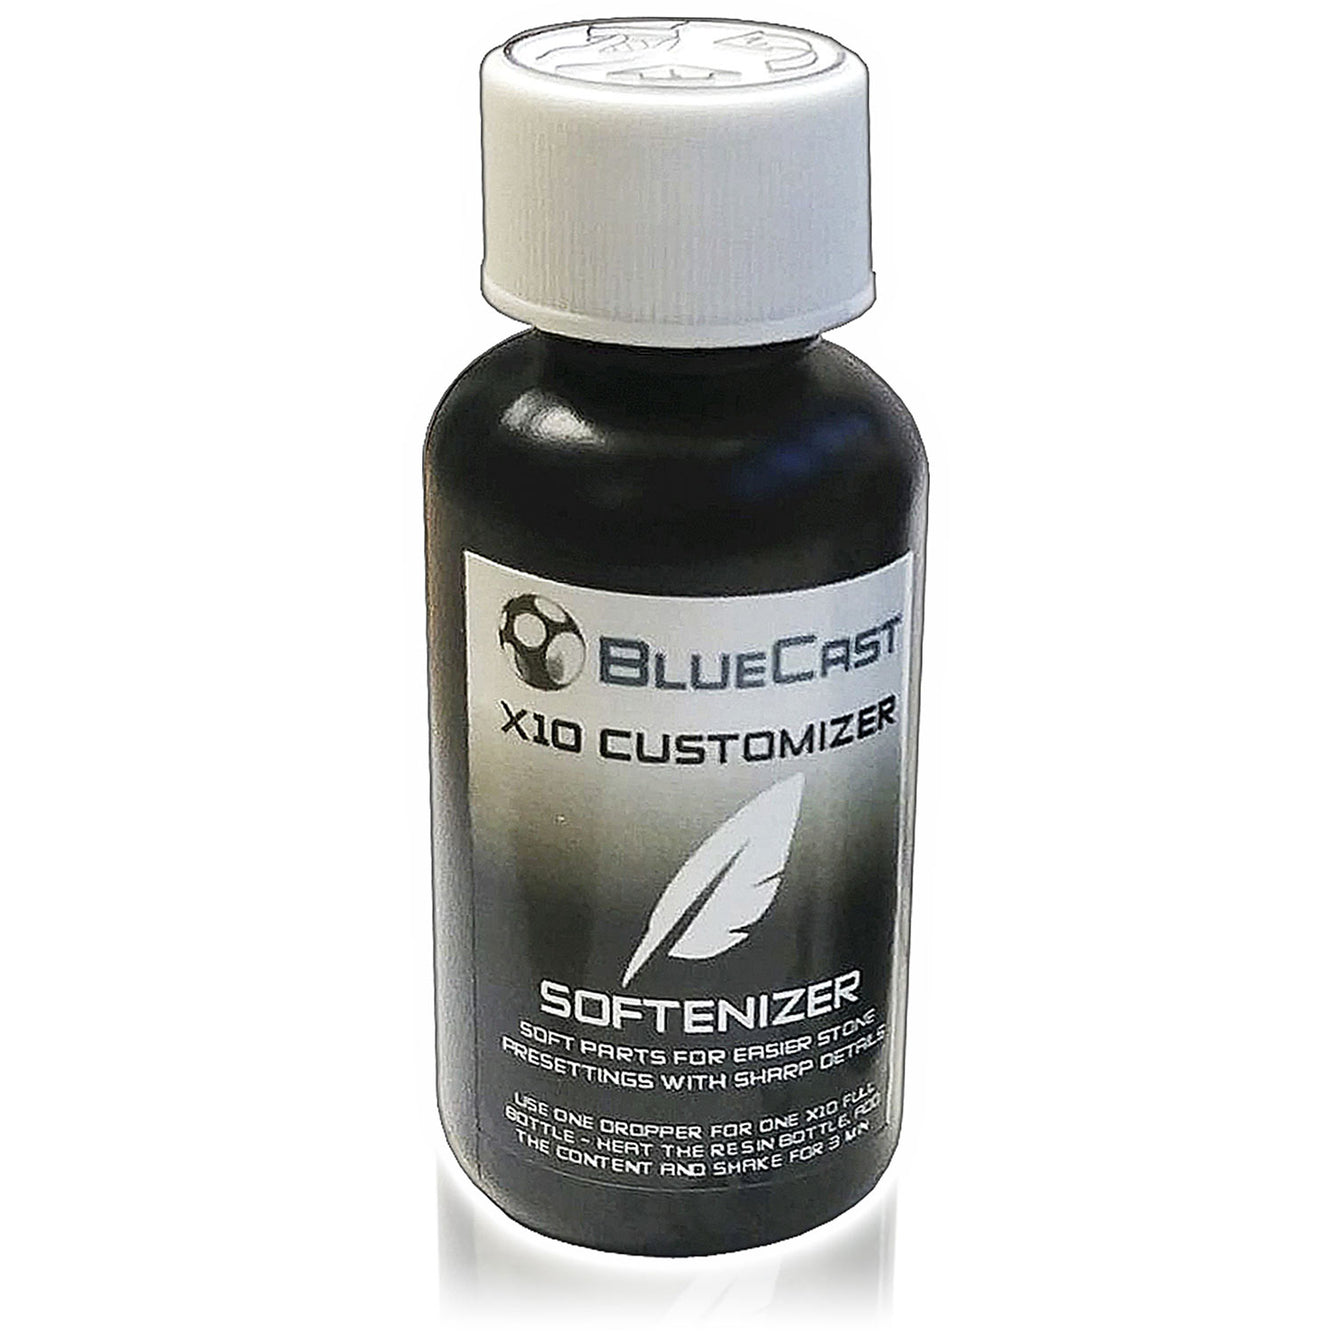 BlueCast Customizer X10 LCD/DLP - Softenizer